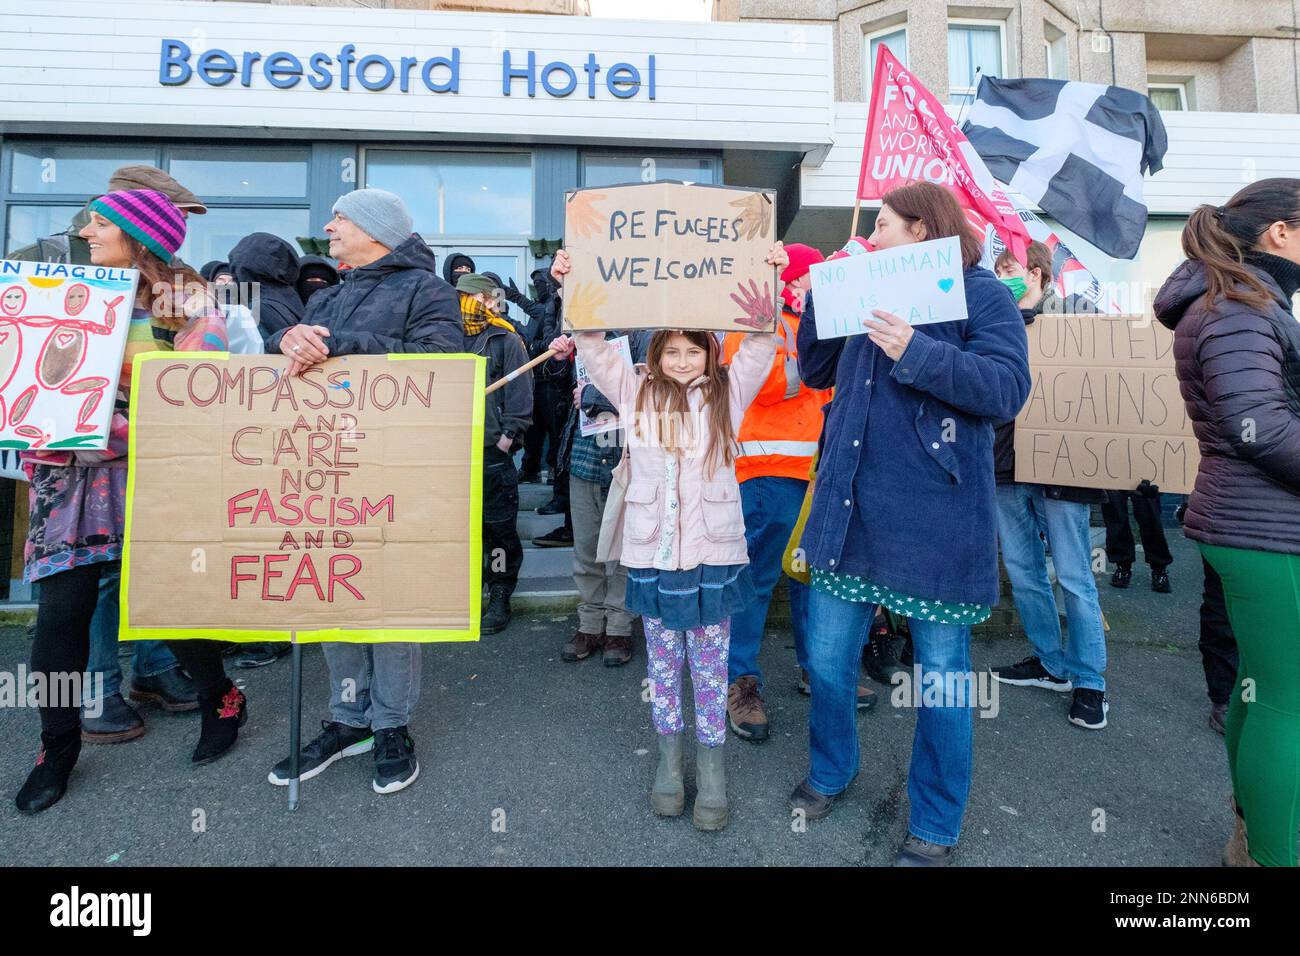 Gli anti-fascisti provenienti da Cornwall resistono, si trovano davanti al Beresford Hotel a Newquay, in Cornovaglia, che ospita i rifugiati, mentre i manifestanti del gruppo di estrema destra Patriotic alternative montano la propria protesta di fronte. Data immagine: Sabato 25 febbraio 2023. Foto Stock